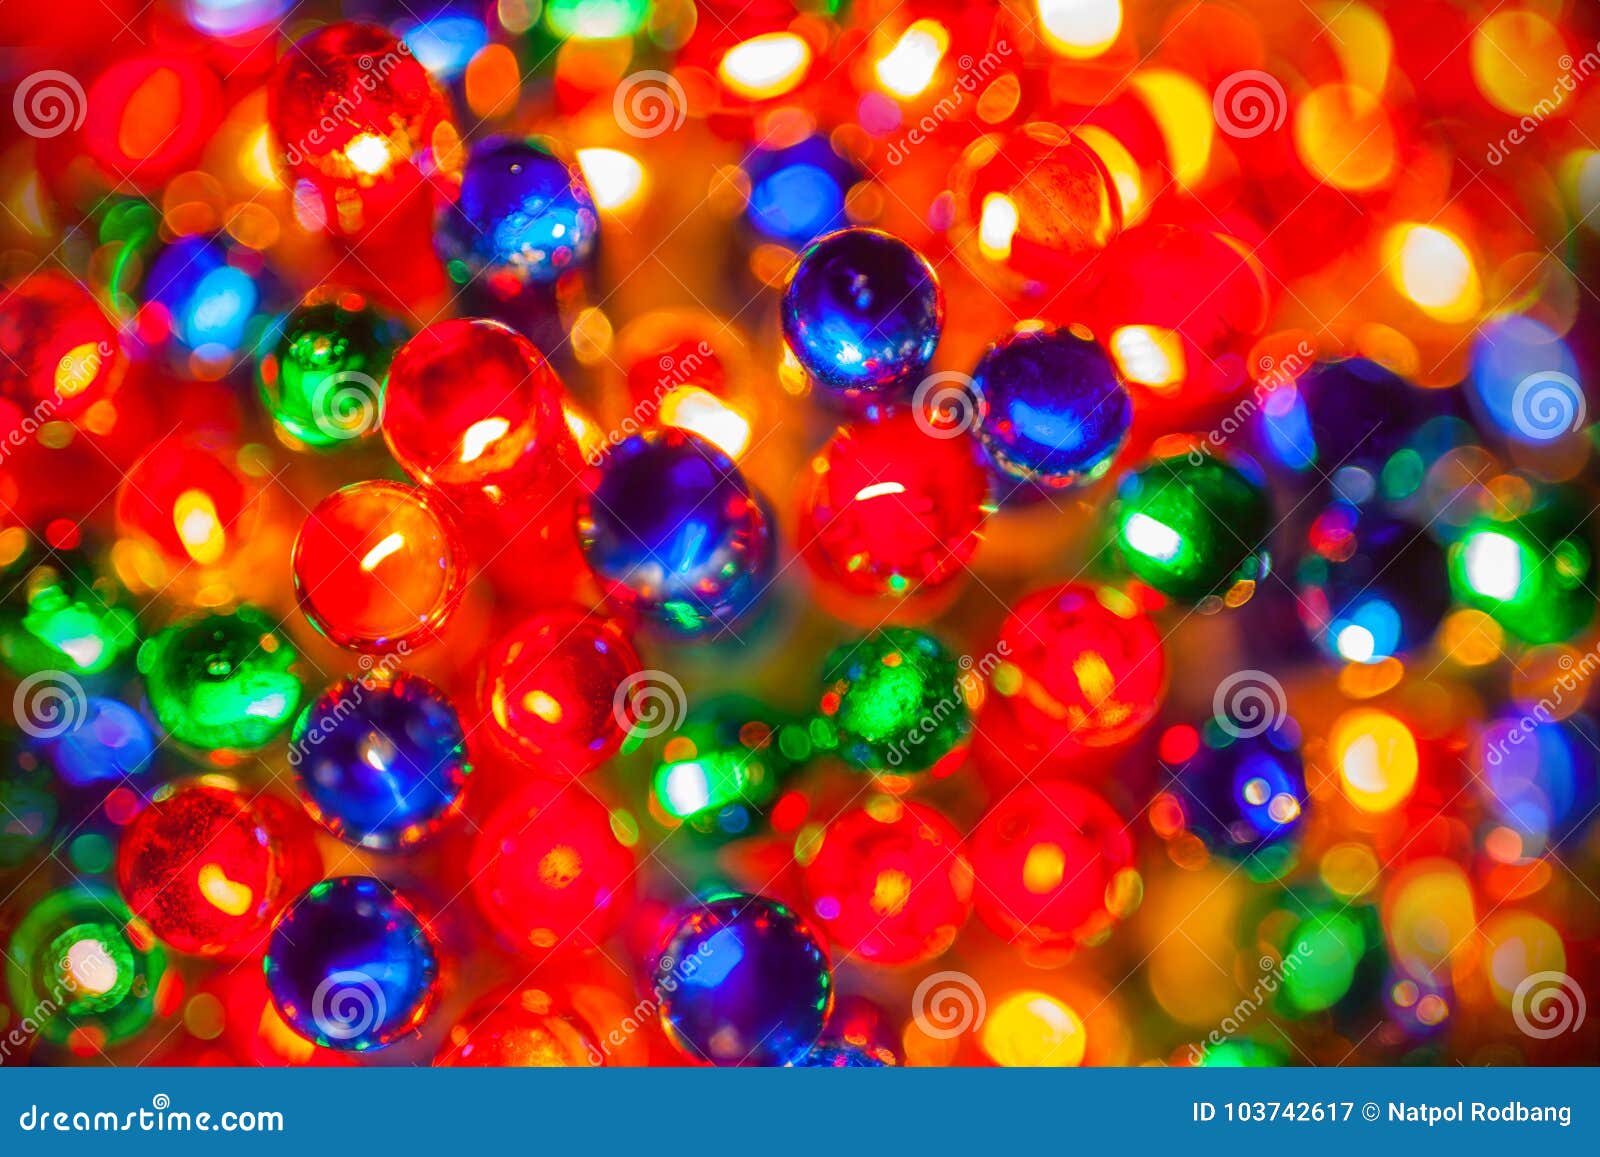 Christmas Tree Lights Bulbs Closeup on Bokeh Colorful Stock Image ...